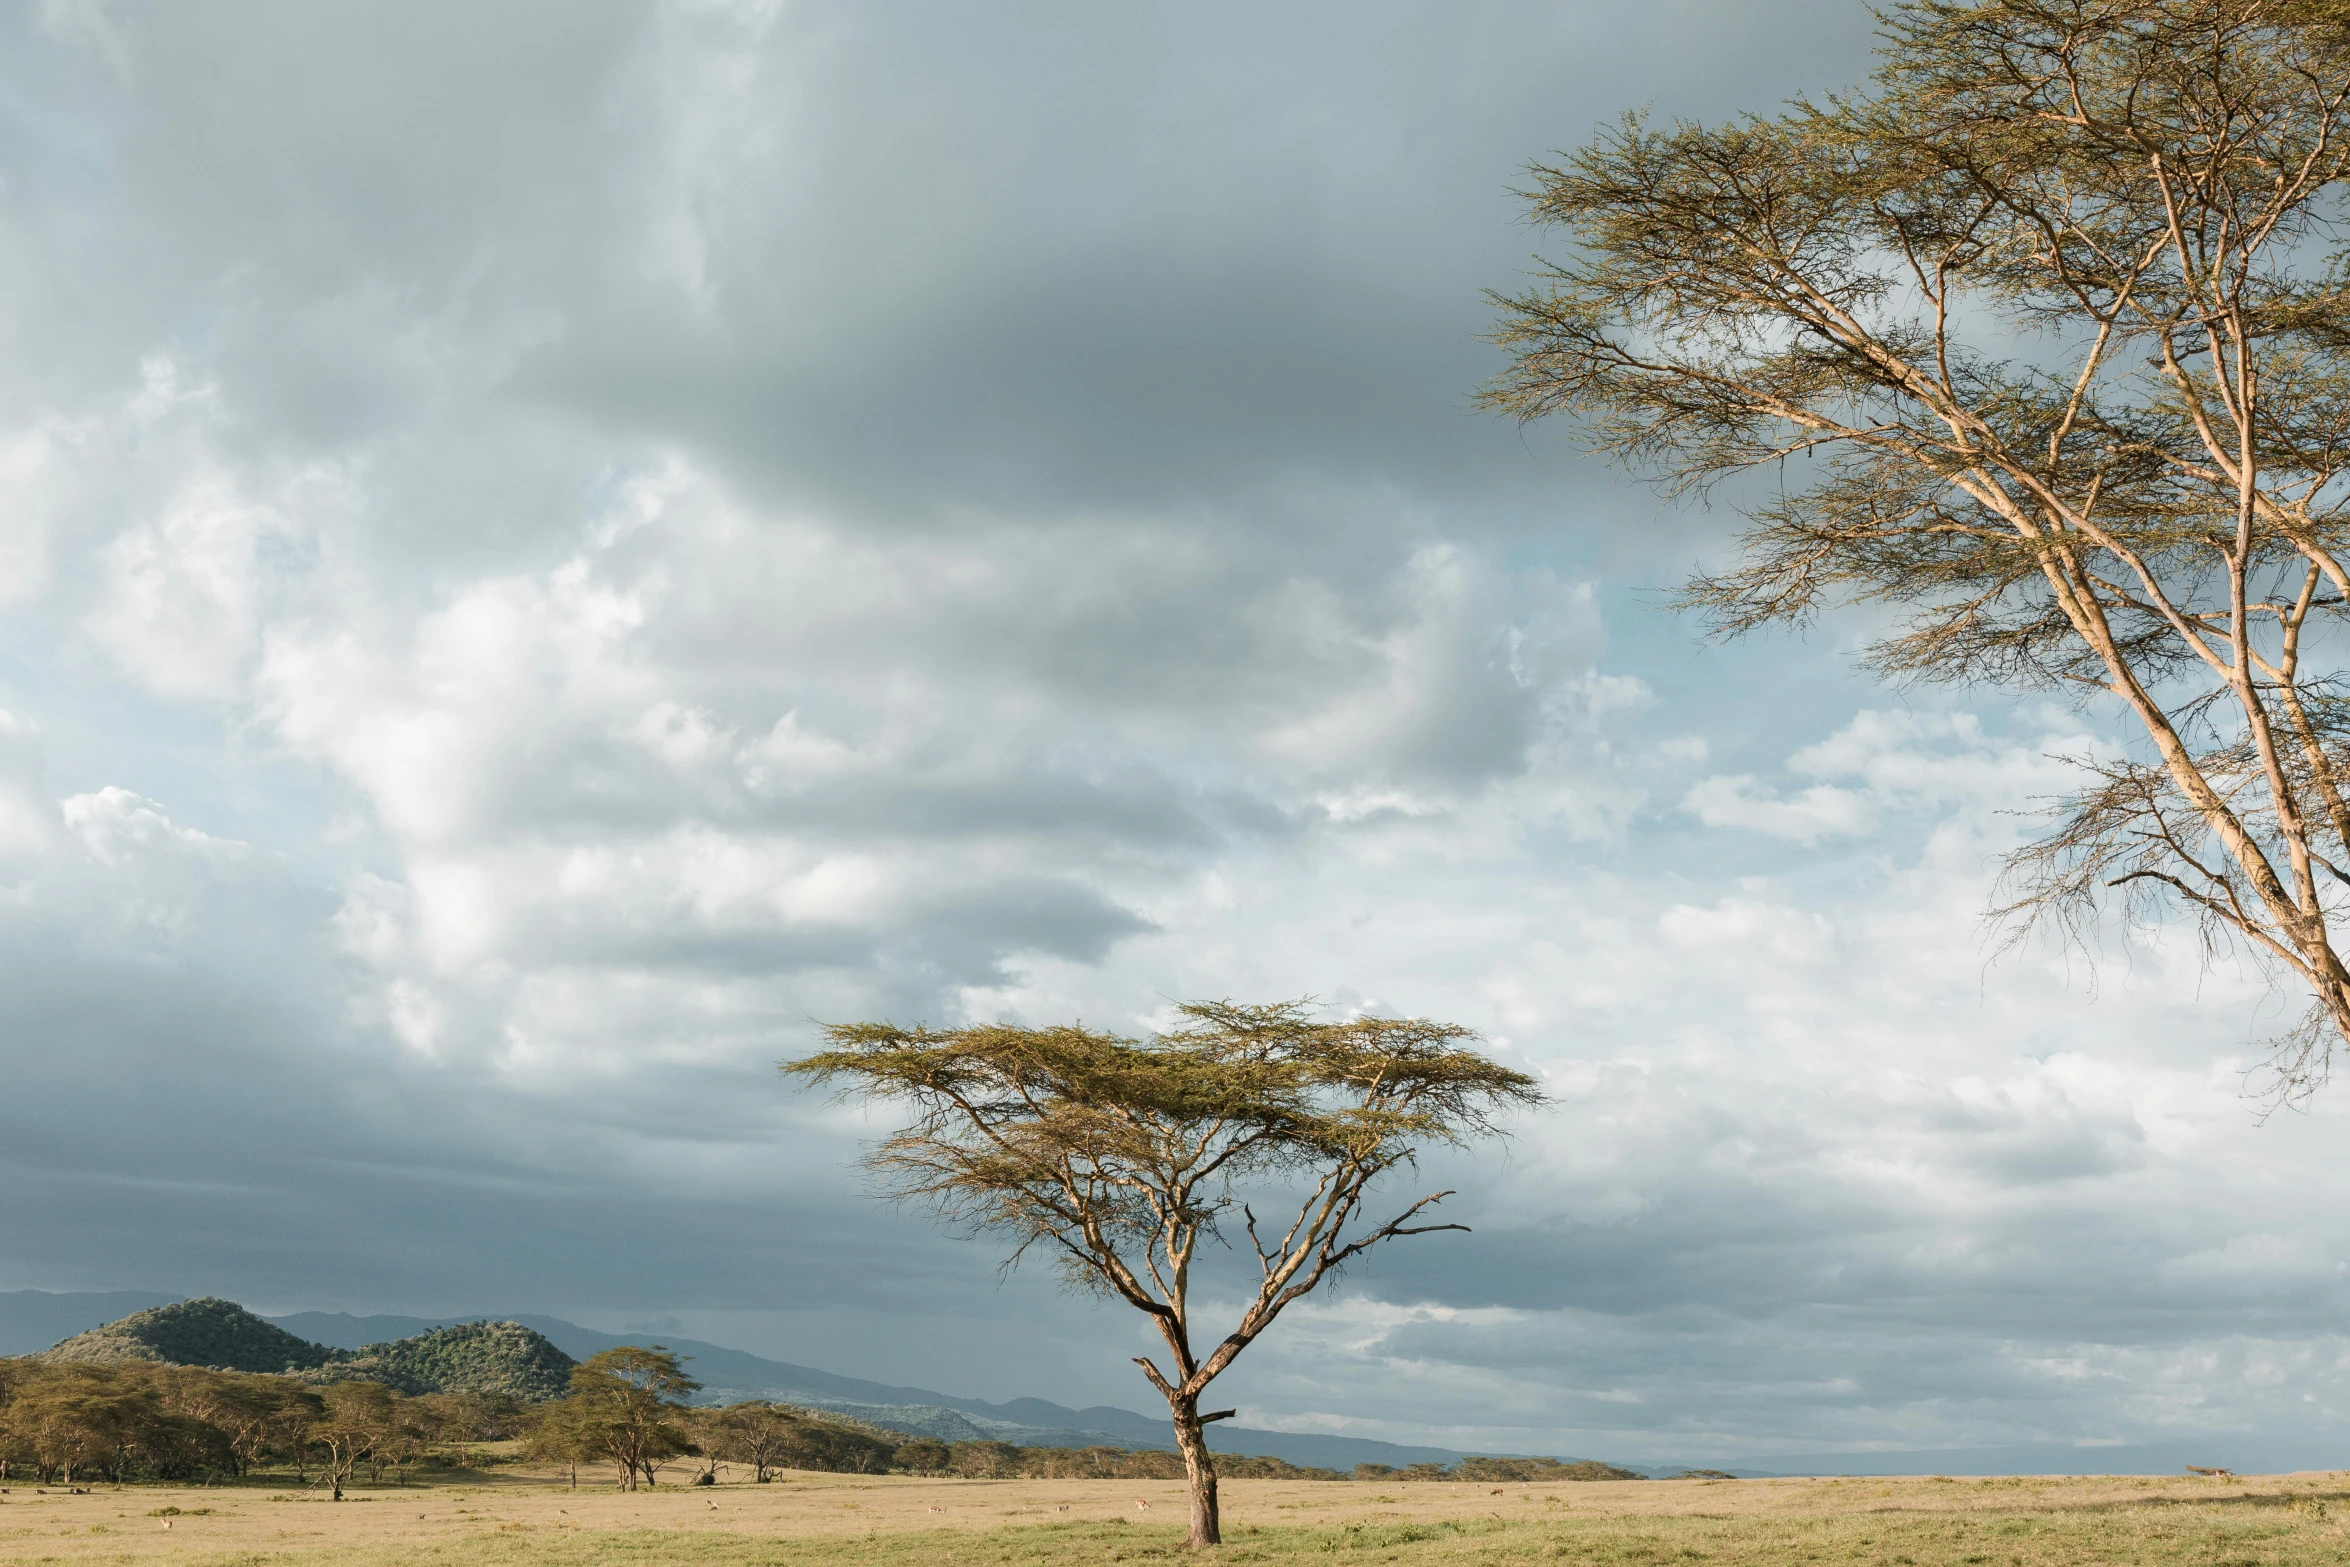 giraffe grazing on the dry grass under a cloudy sky